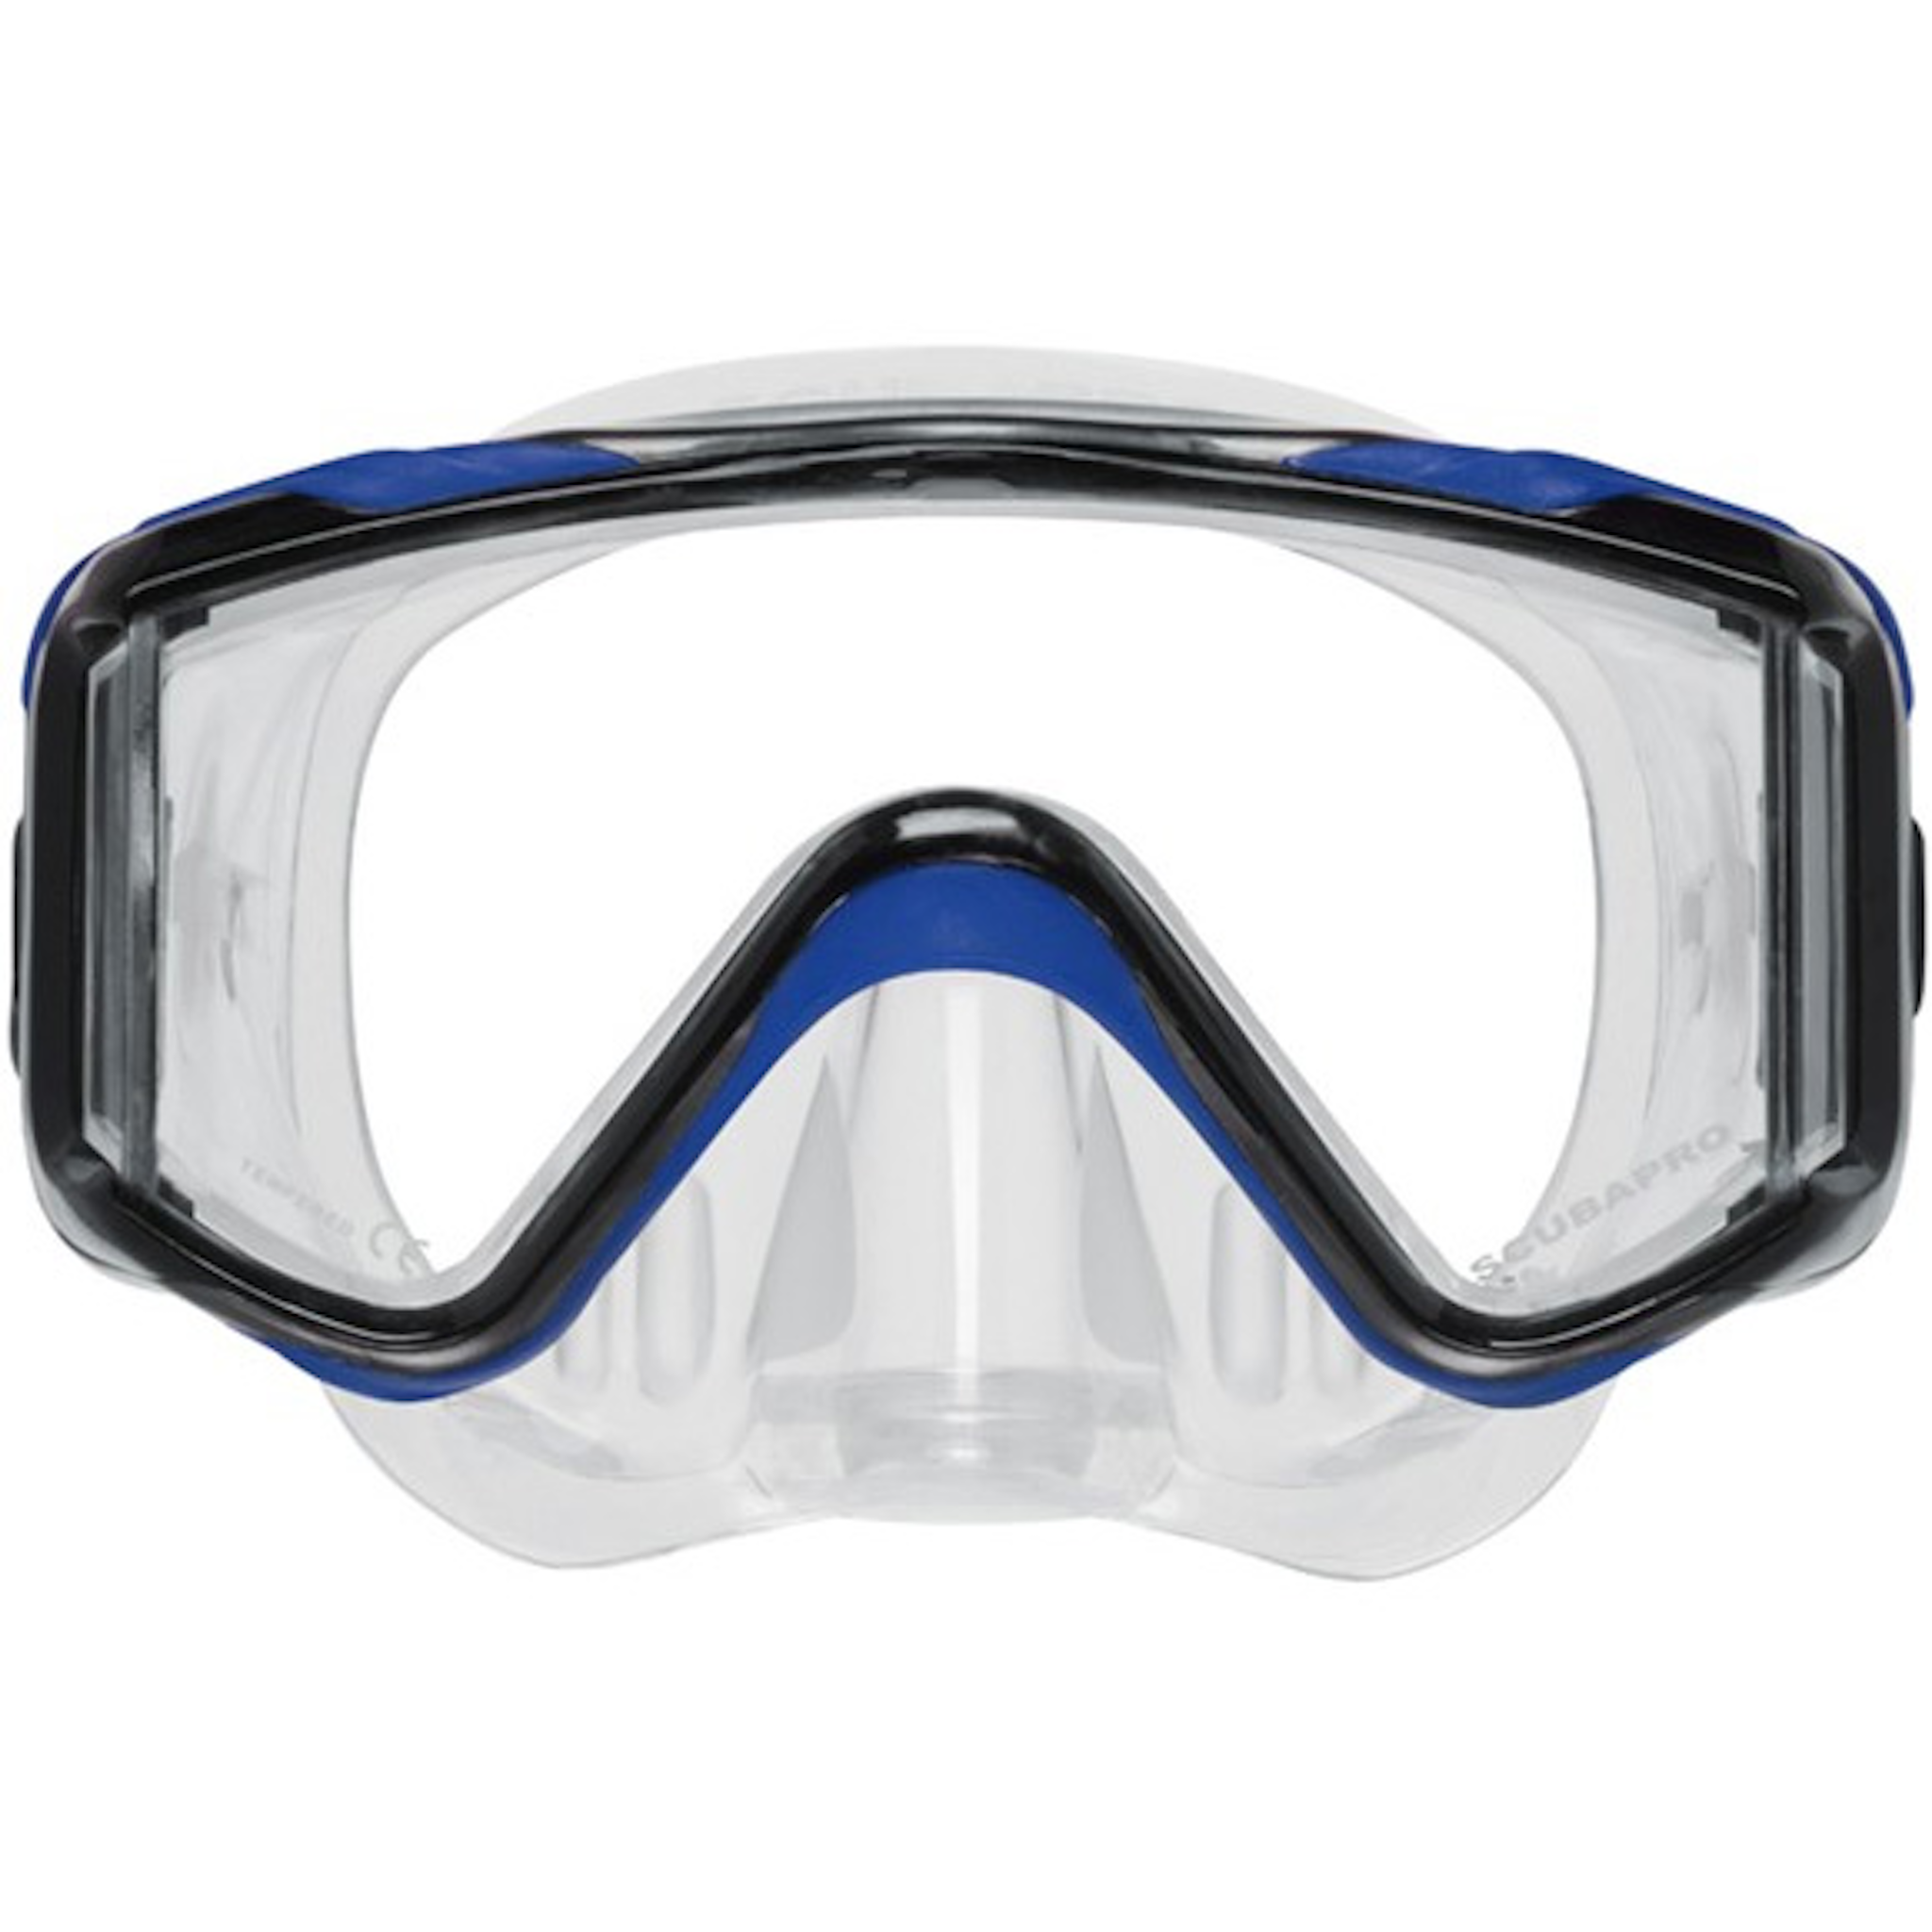 Scubapro Crystal Vu Mask Pro